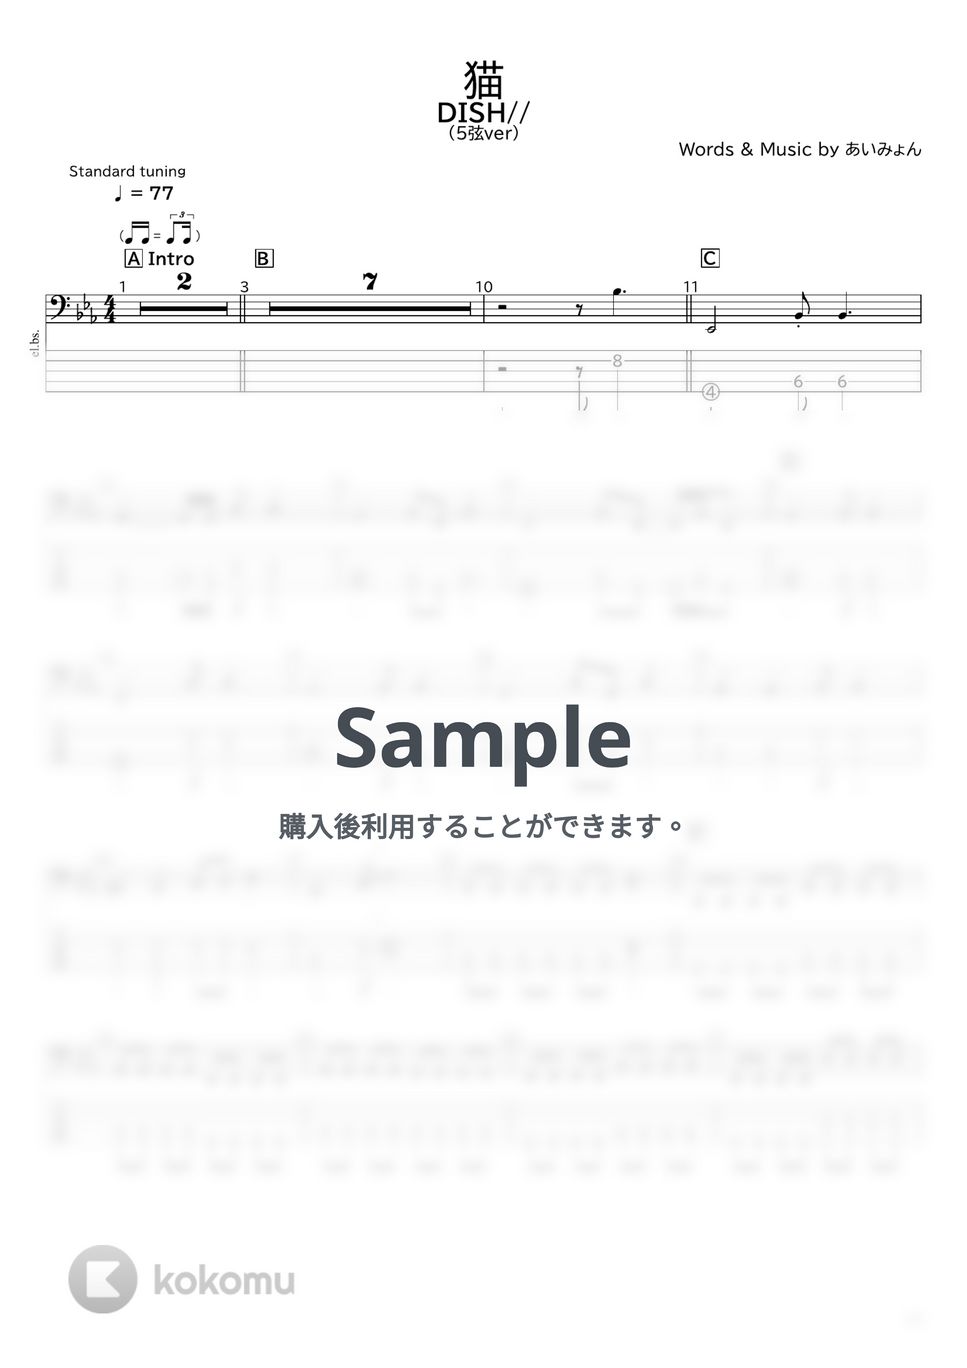 DISH// - 猫(5弦ver) by たぶべー@財布に優しいベース用楽譜屋さん